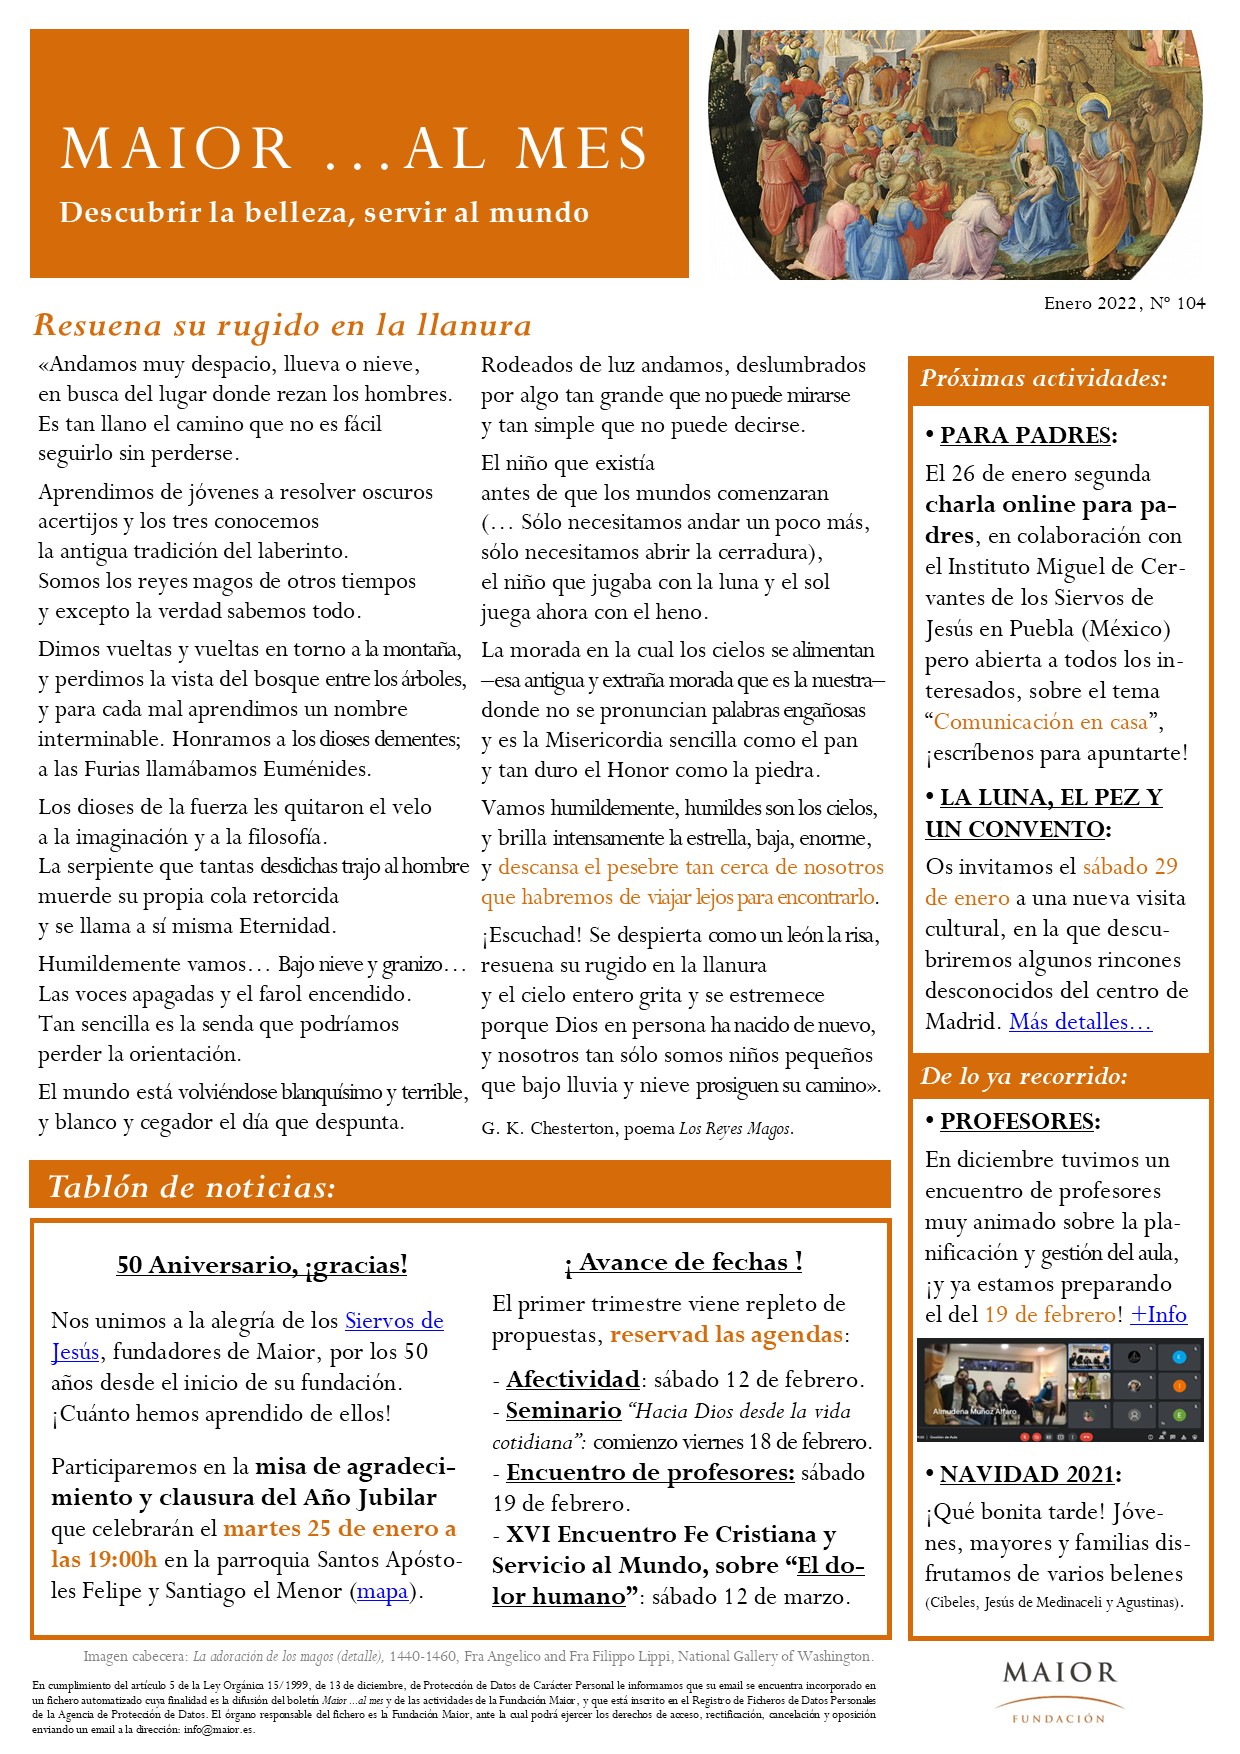 Boletín mensual de noticias y actividades de la Fundación Maior. Edición de enero 2022